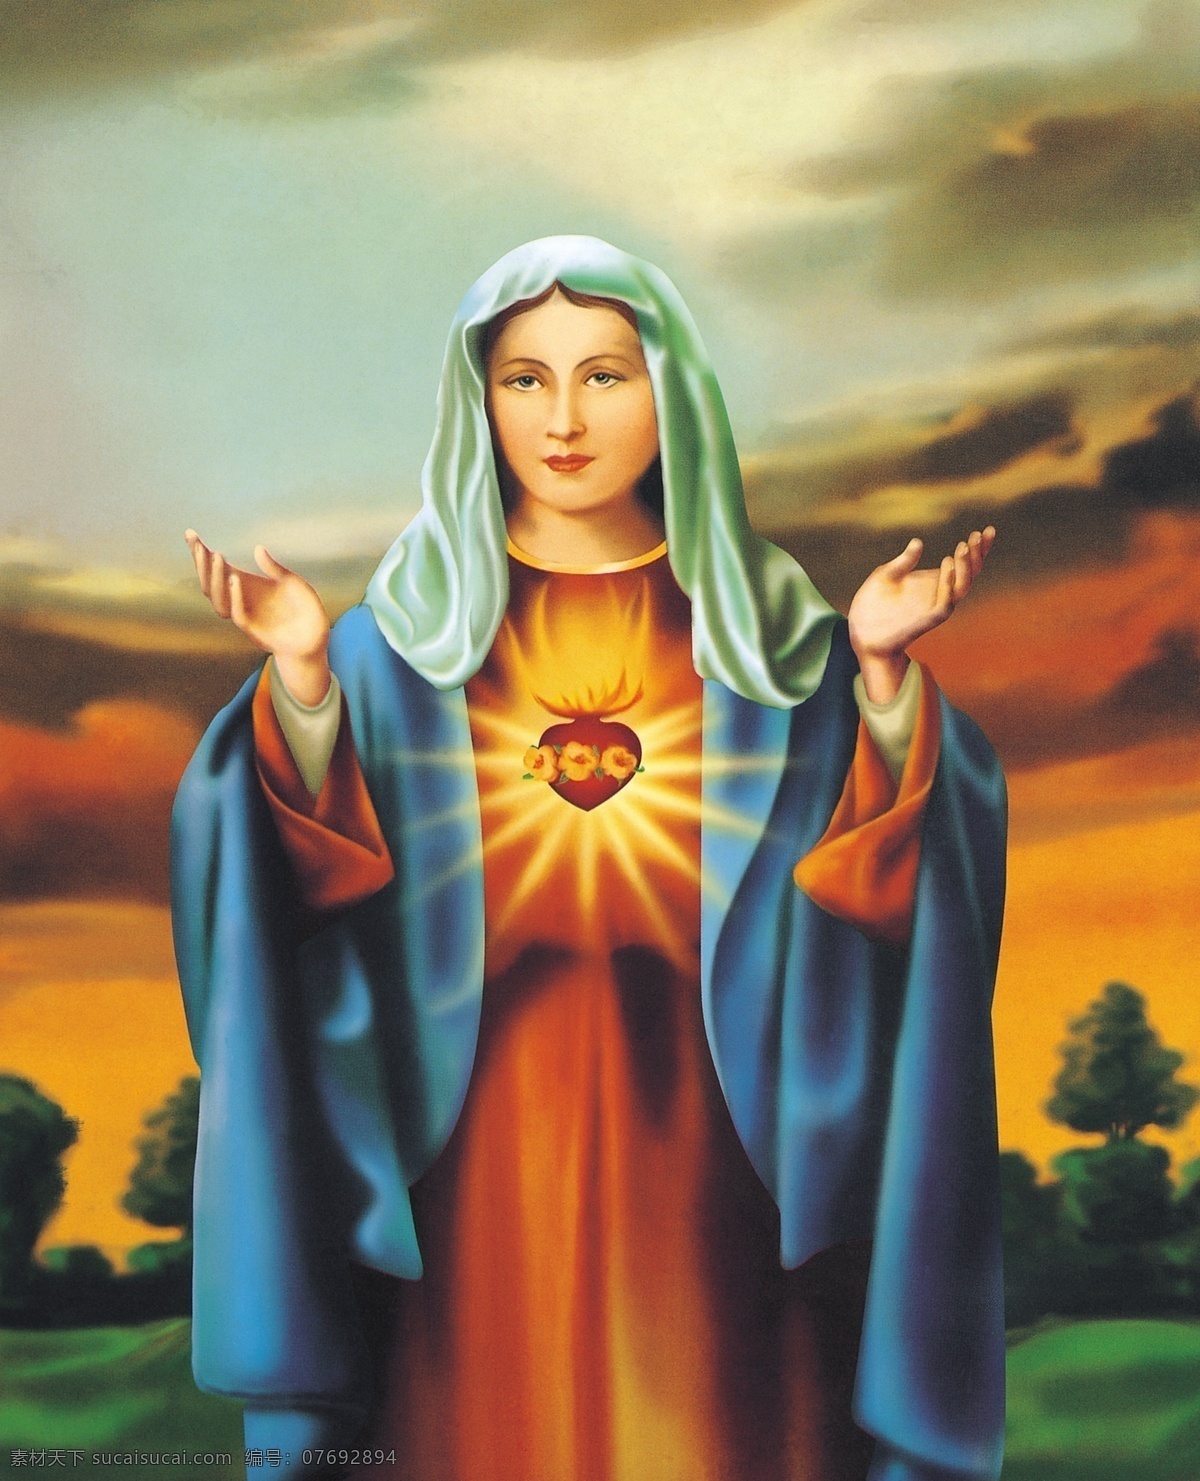 人物油画 耶稣 妇女 修女 主 信徒 爱心 火焰 手绘 油画 装饰画 无框画 屏风 壁挂 大图 高清晰 肌理 效果 抽象 清晰油画 绘画书法 文化艺术